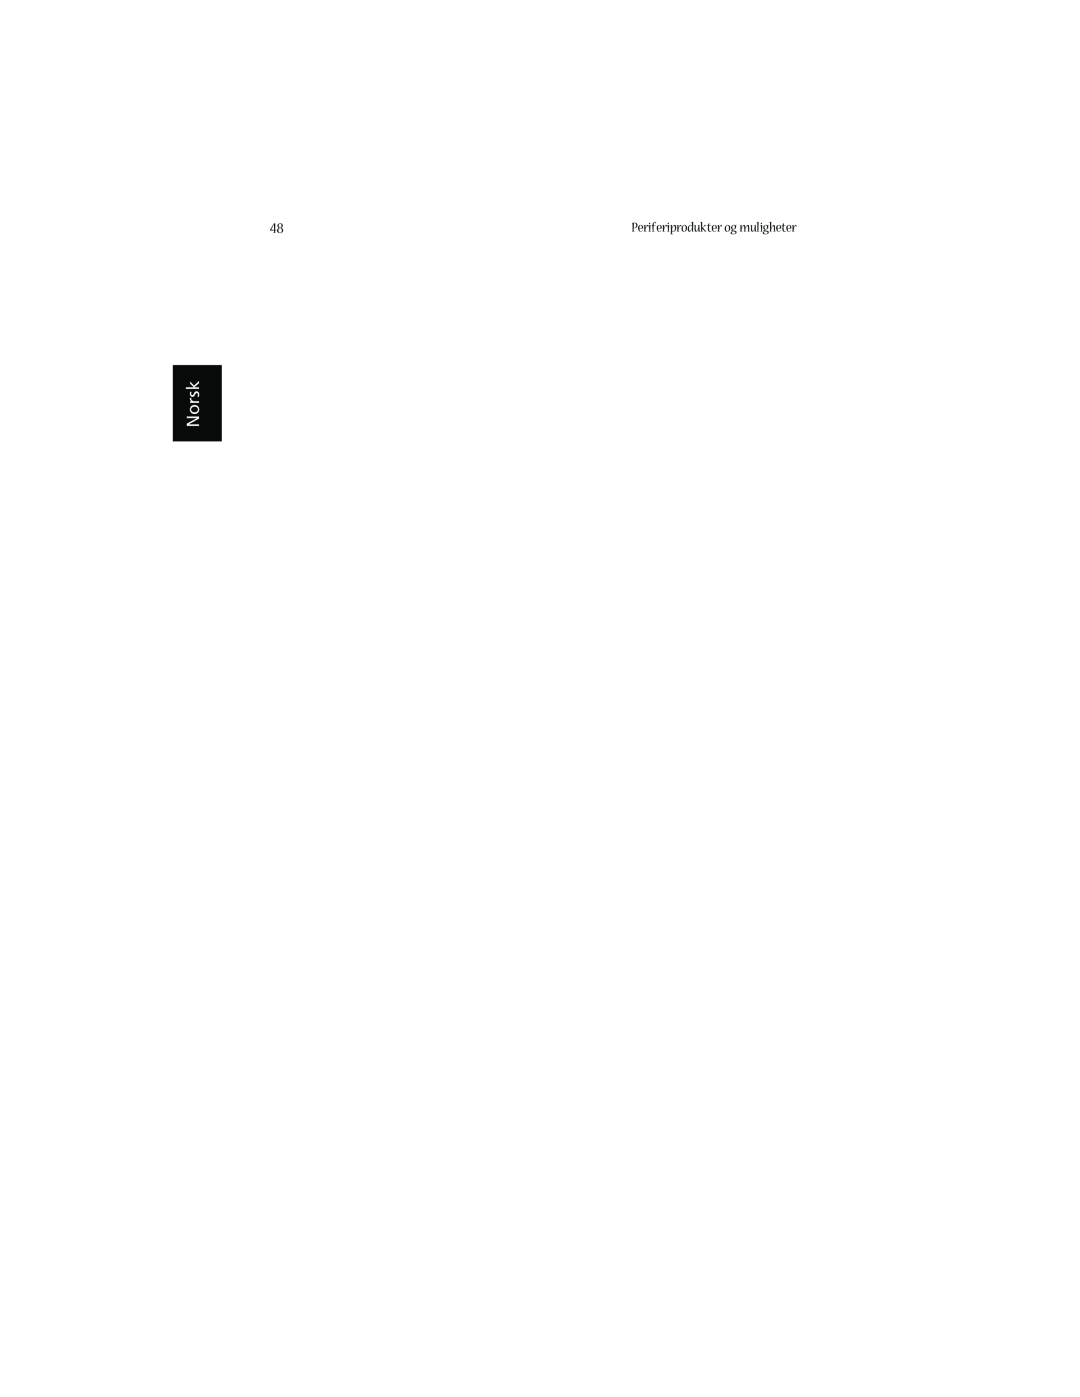 Acer 1660 manual Norsk, Periferiprodukter og muligheter 